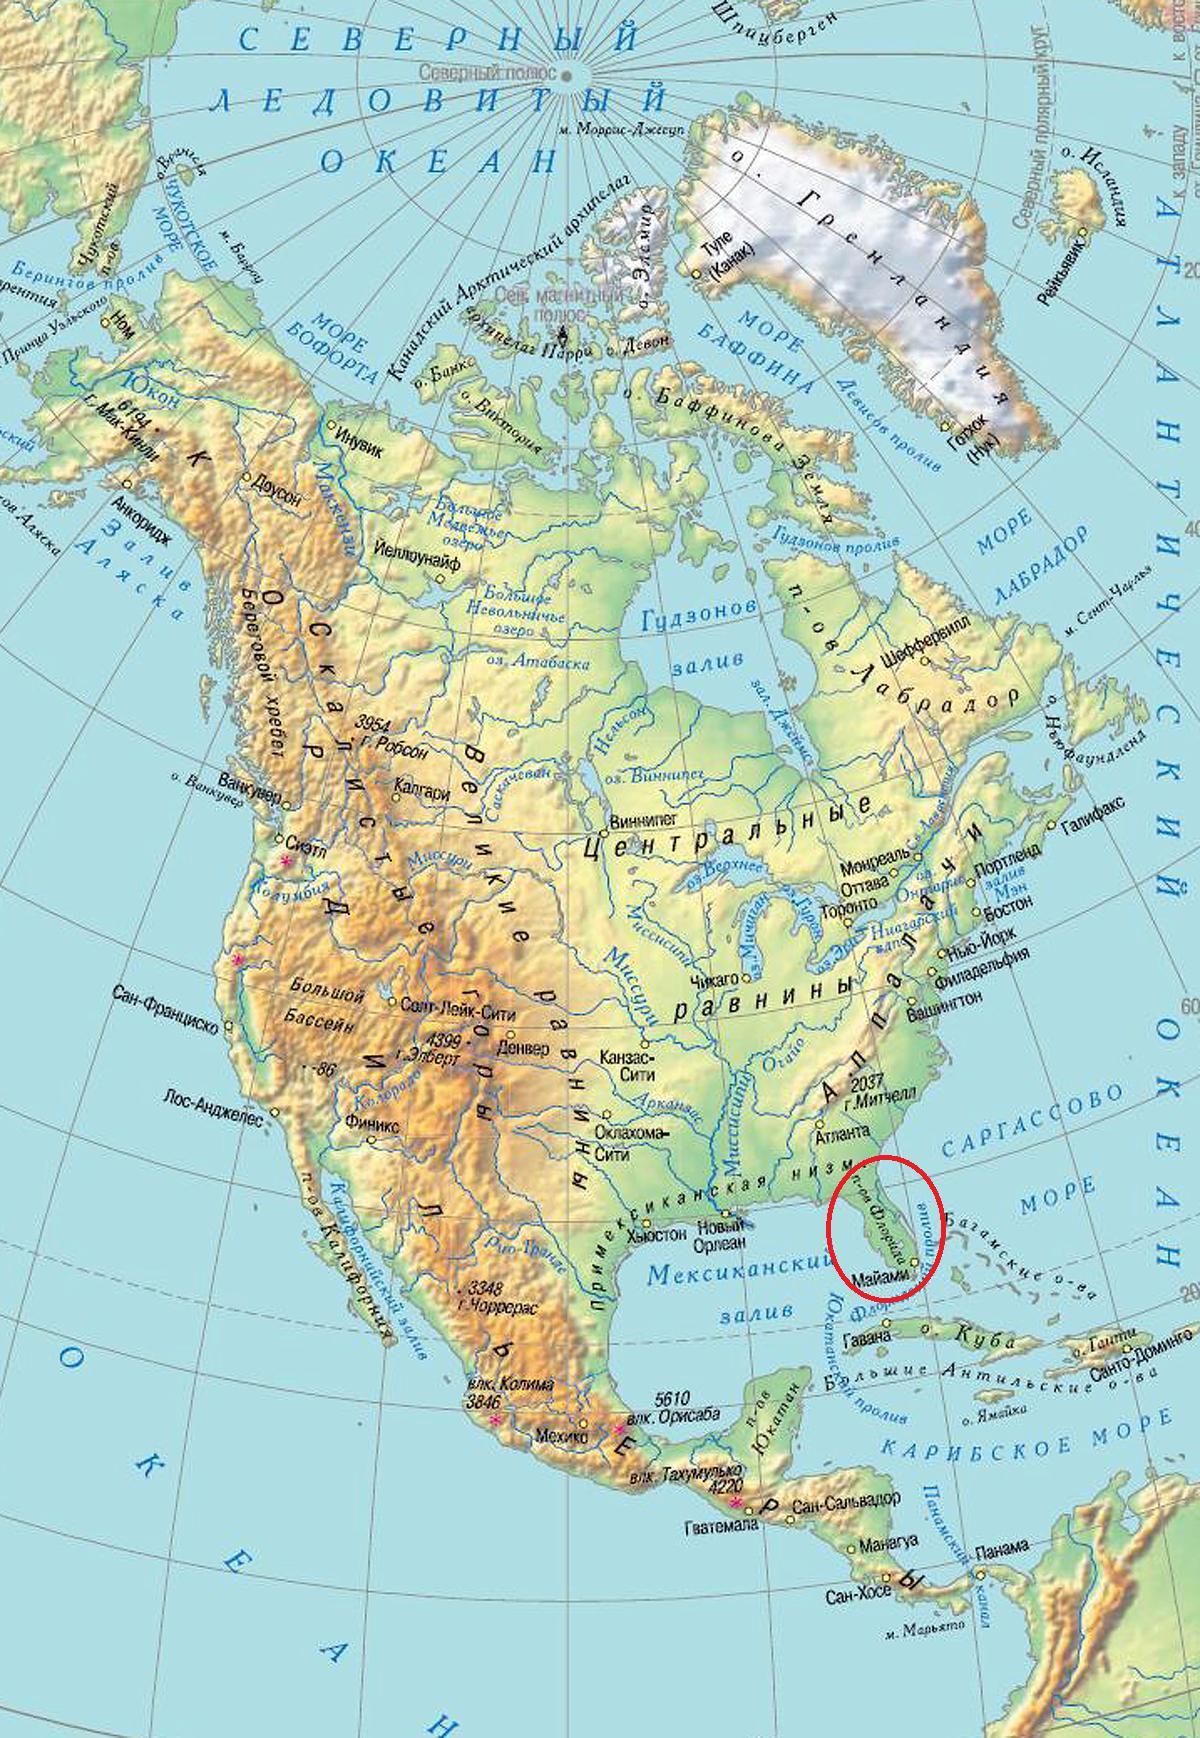 Горы северной америки физическая карта. Карта Северной Америки географическая. Северная Америка на карте физическая карта. Географическая карта Северной Америки с низменностями. Карта Северной Америки географическая крупная.